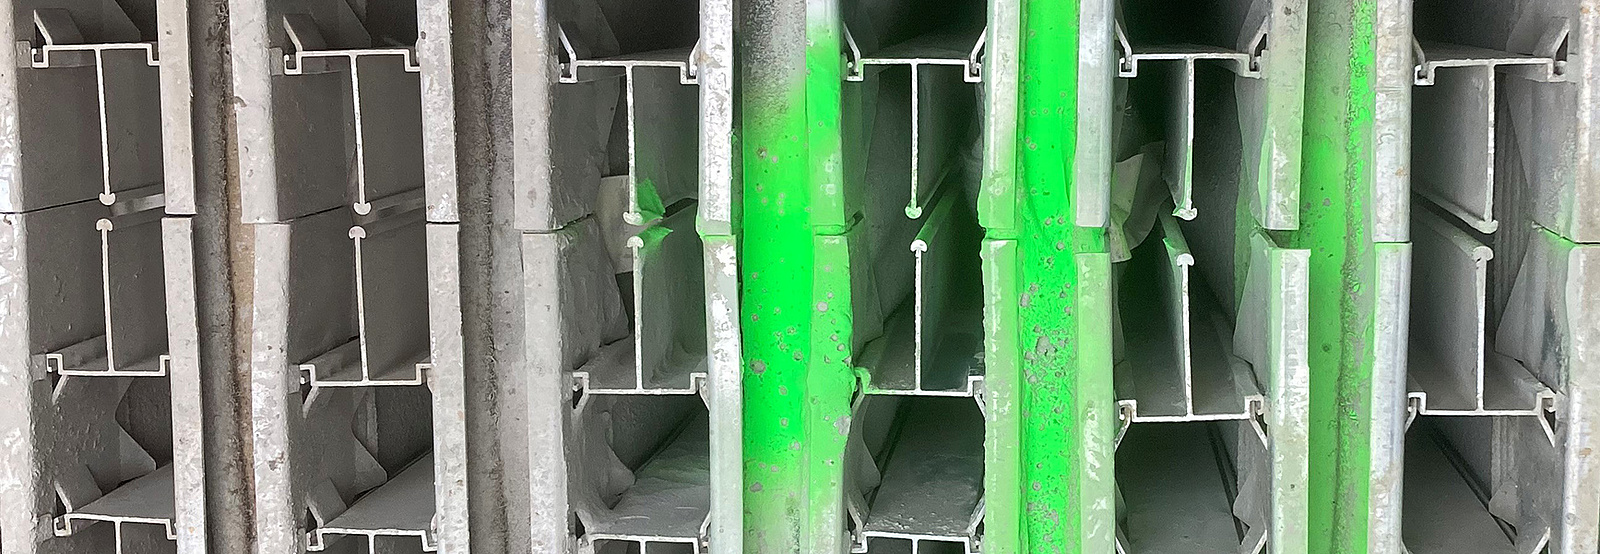 Ett foto på ett grått filter där självlysande grön färg syns koncentrerat på ett ställe. 